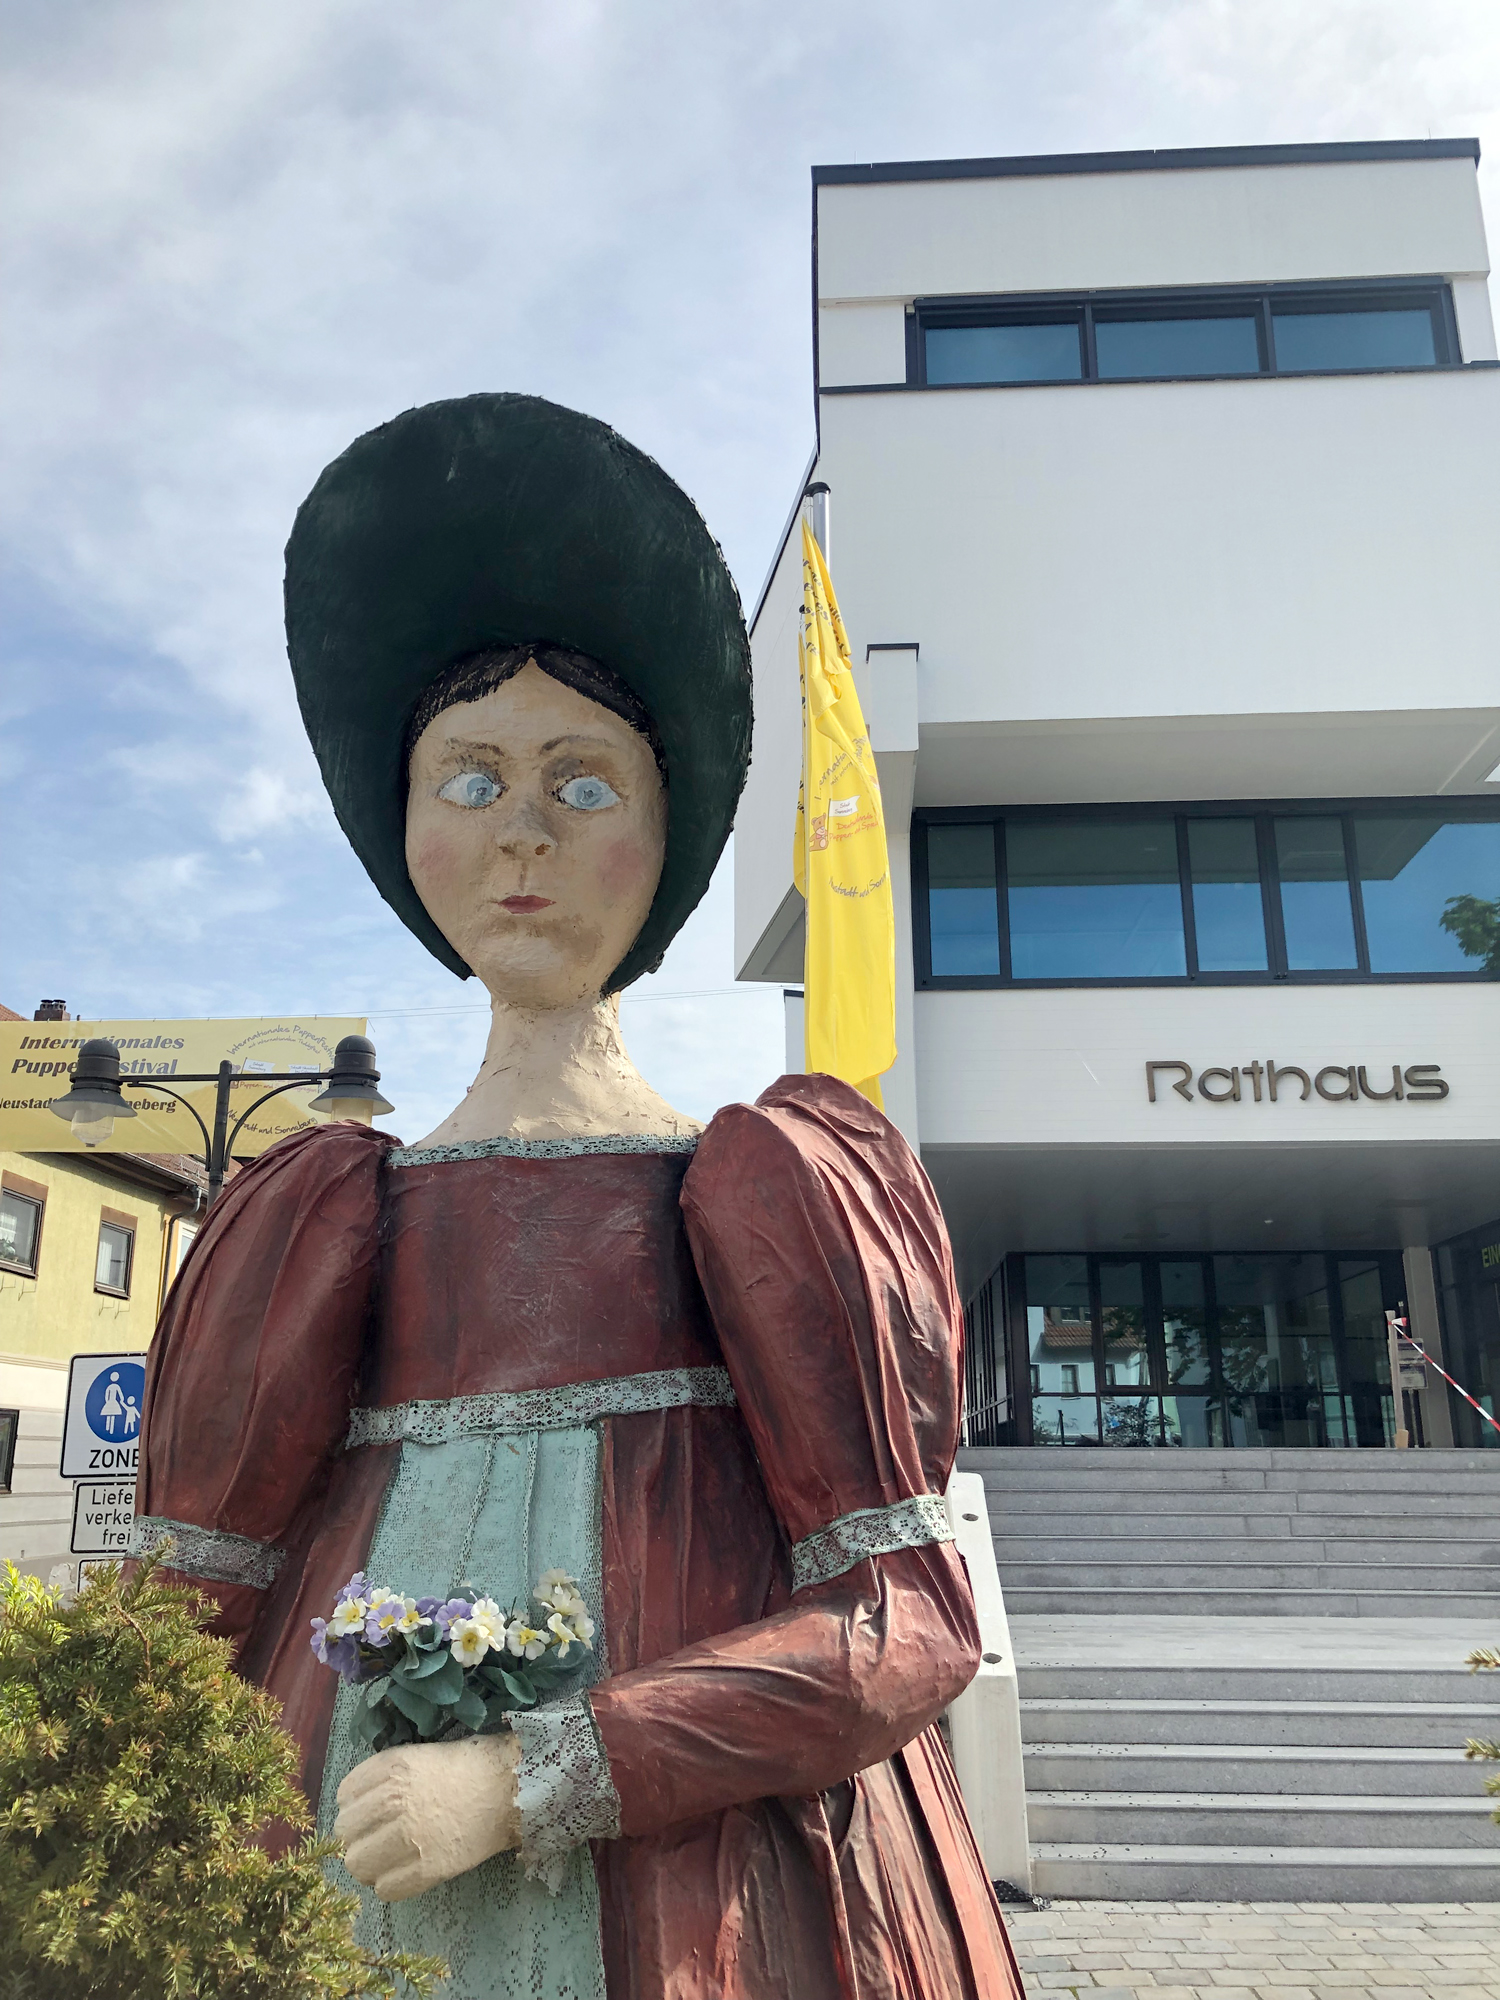 So ernst wie die Dame guckt und etwas schrg schaut ist die bergroe Puppe vor dem Rathaus in Neustadt bei Coburg nicht. Eben Kunst - vor dem Rathaus. (Bild links) 